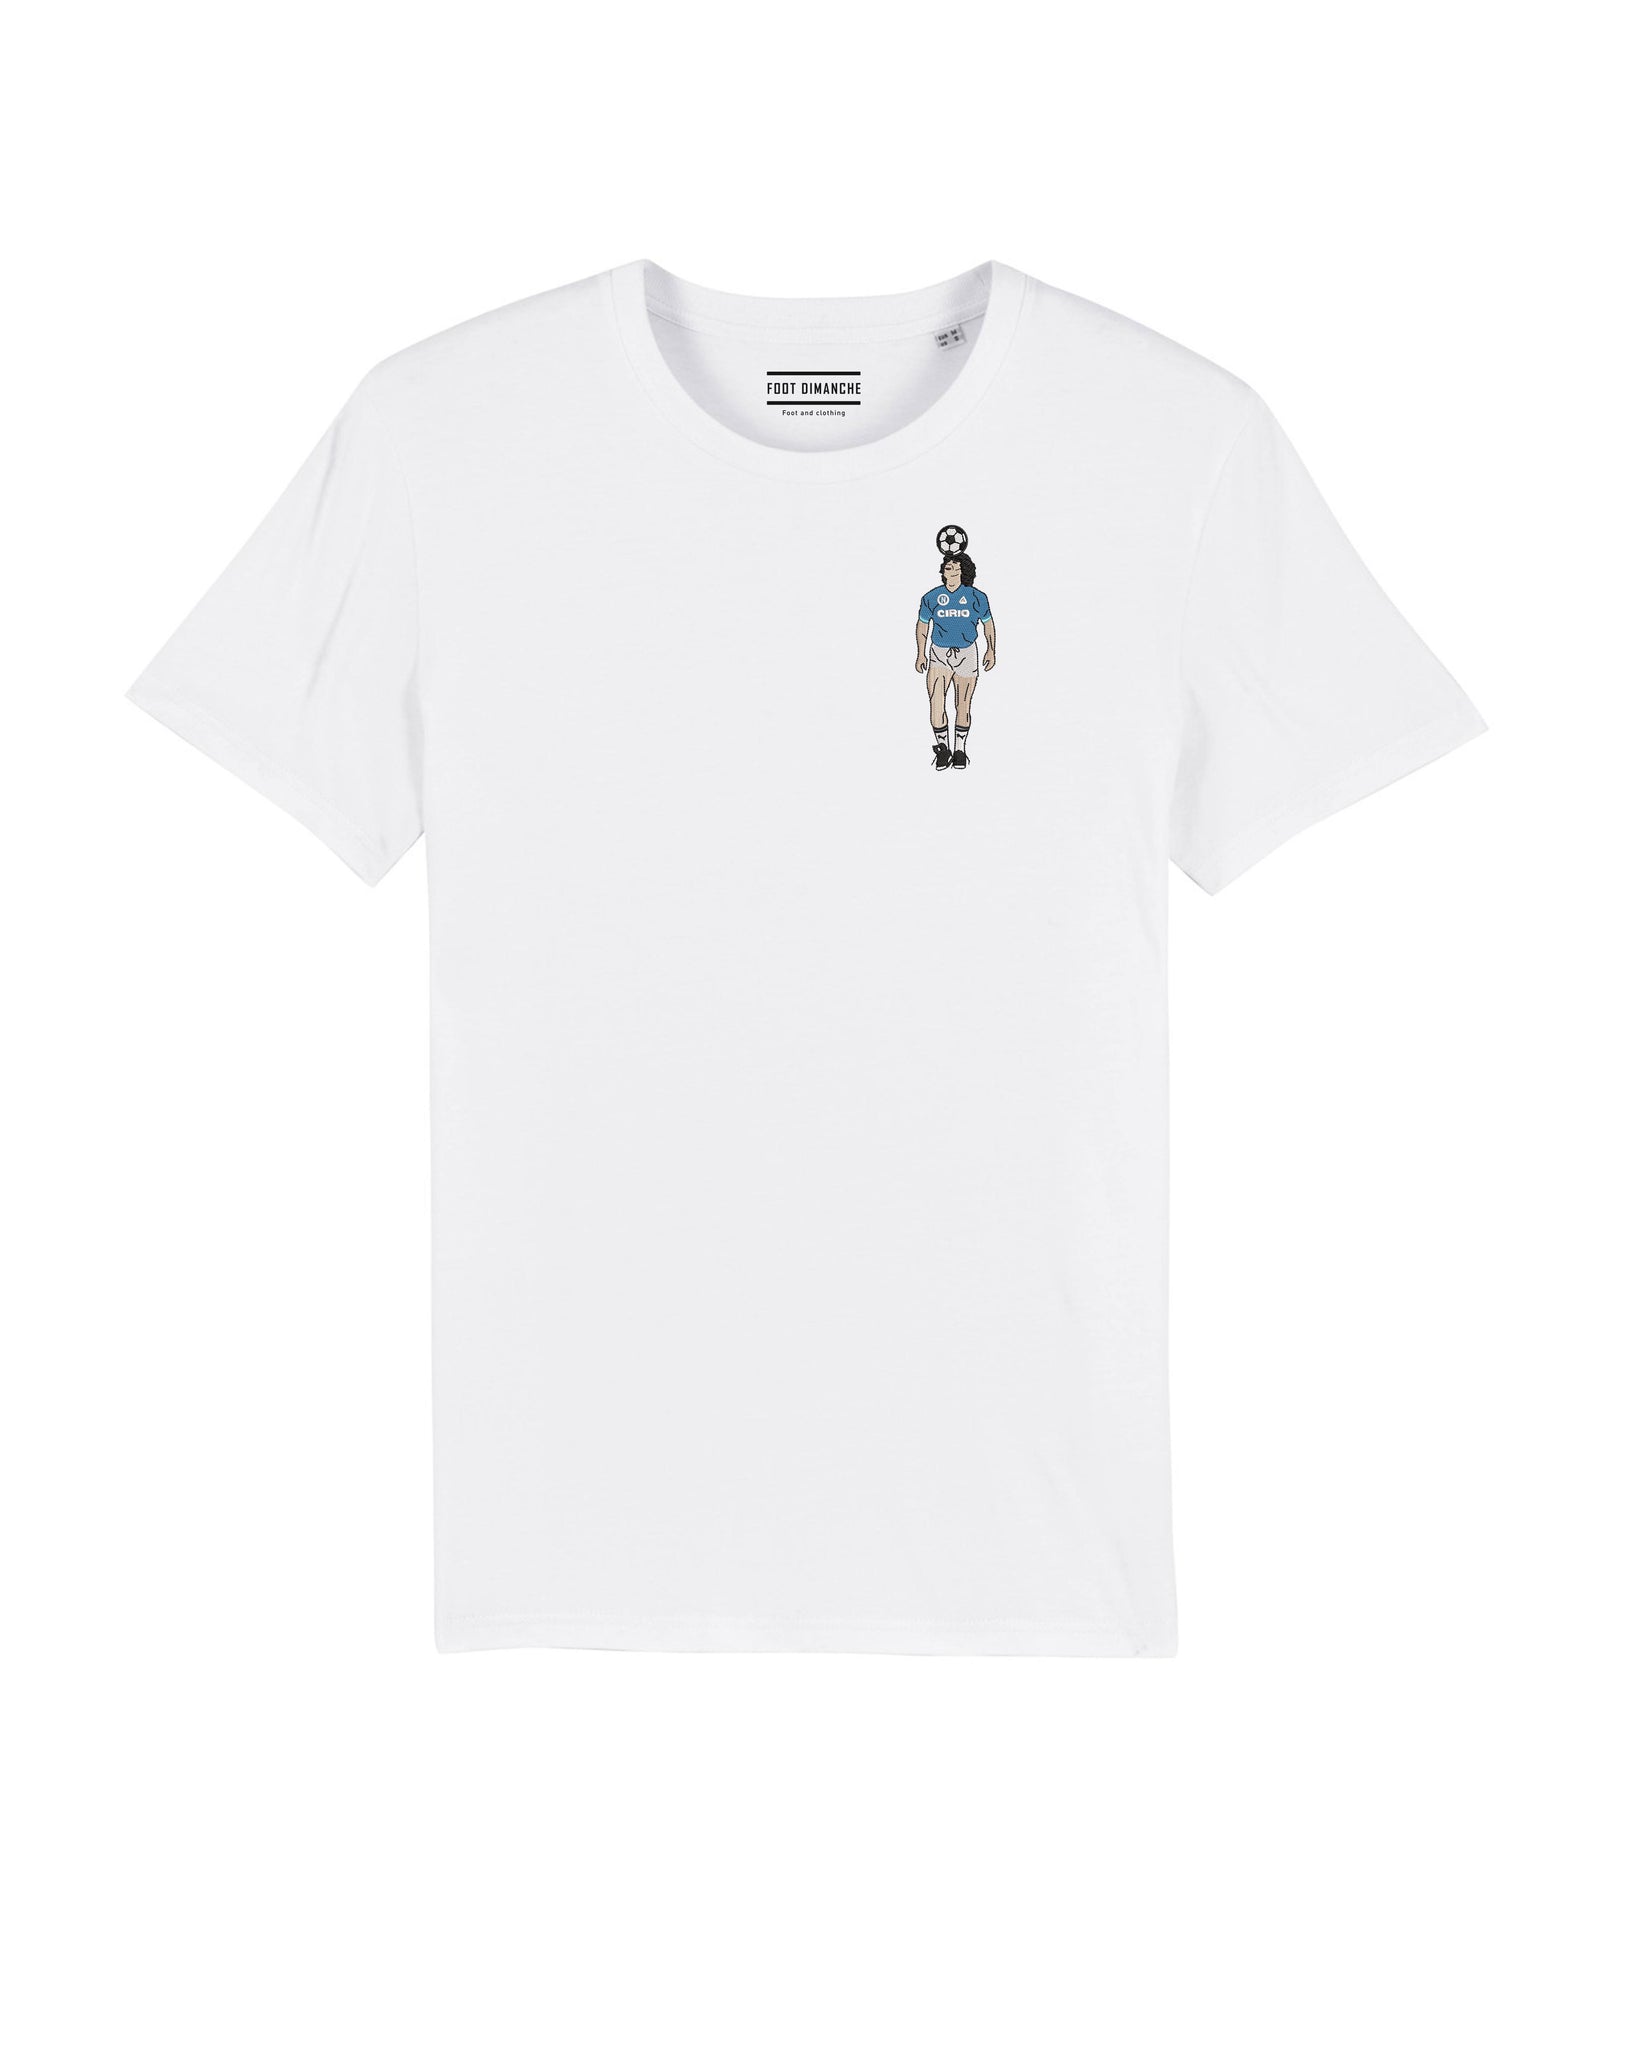 Tee Shirt Diego Maradona